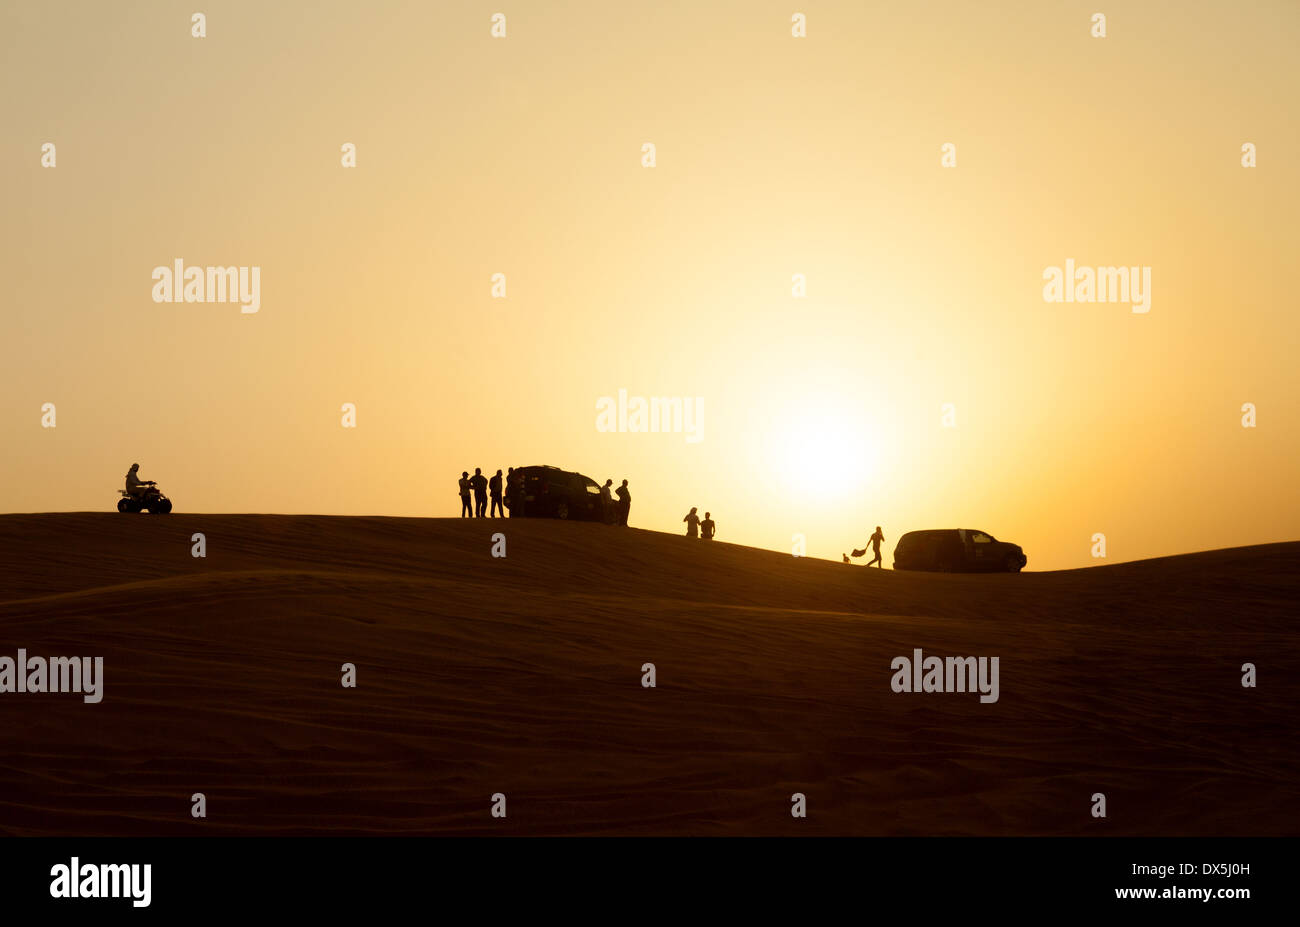 Dubai Desert Safari - les gens à regarder le coucher du soleil depuis les dunes, Désert d'Arabie, DUBAÏ, ÉMIRATS ARABES UNIS, Émirats arabes unis, Moyen Orient Banque D'Images